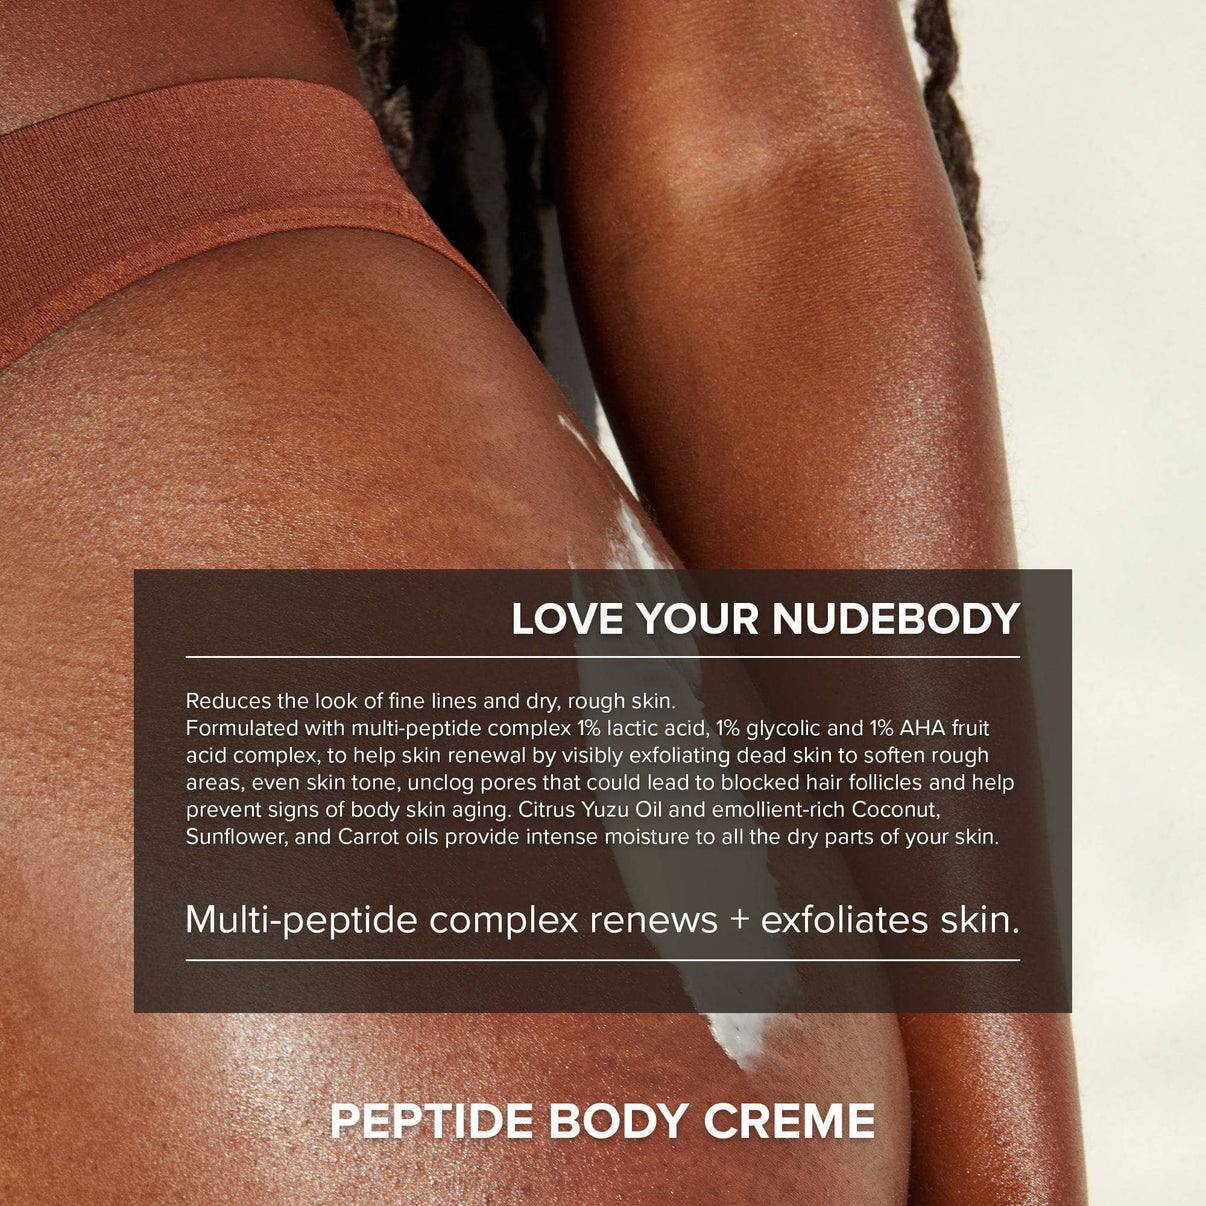 Peptide body creme. Multi-peptide complex renews + exfoliates skin.